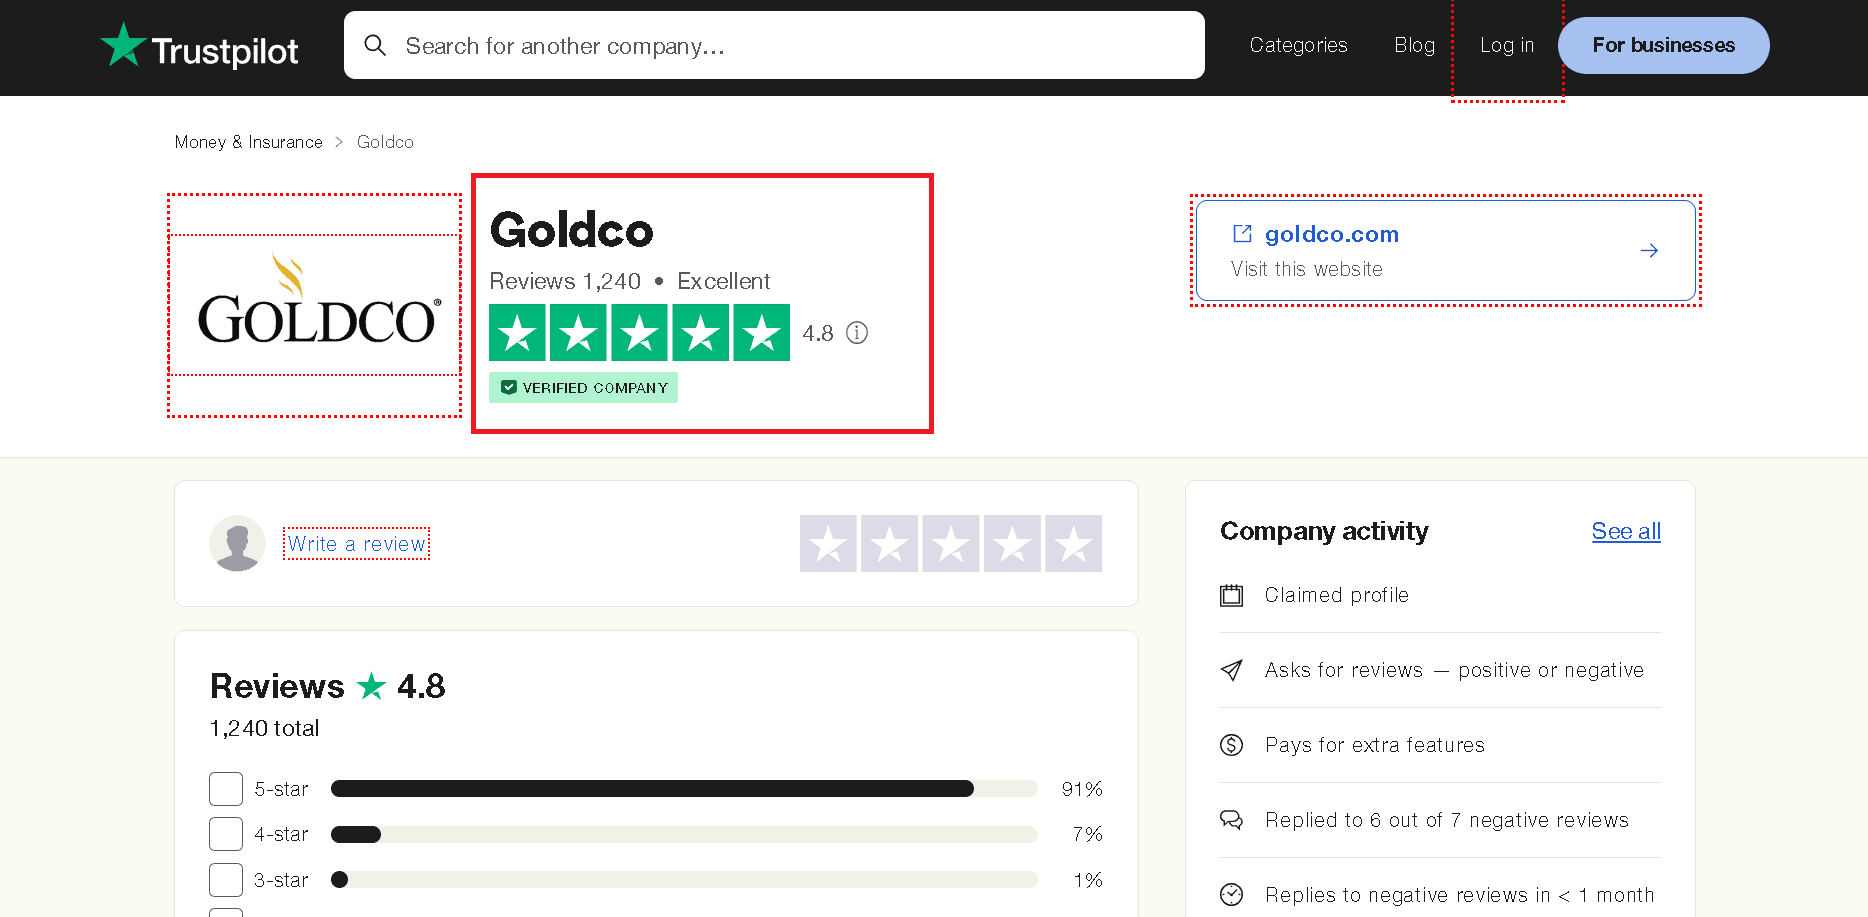 Goldco Trustpilot profile